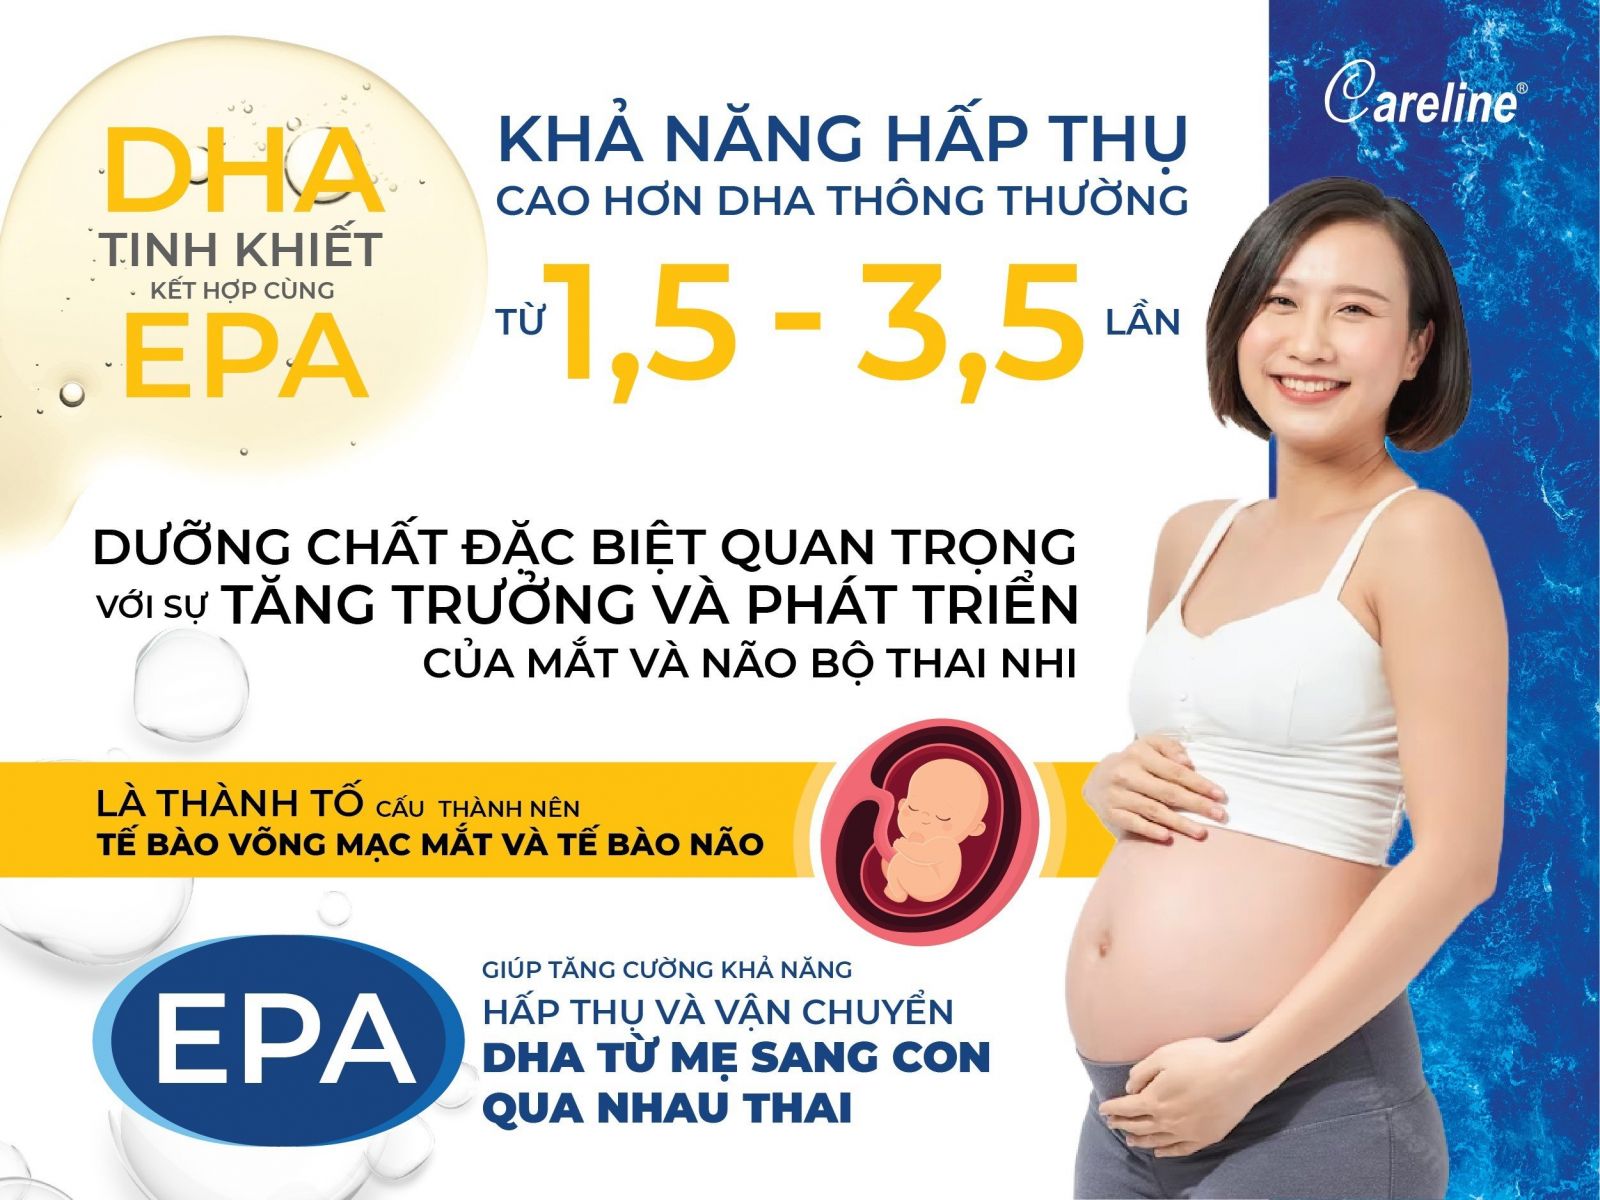 DHA tinh khiết kết hợp EPA - Tăng khả năng hấp thụ DHA cao hơn 1,5 - 3,5 lần 